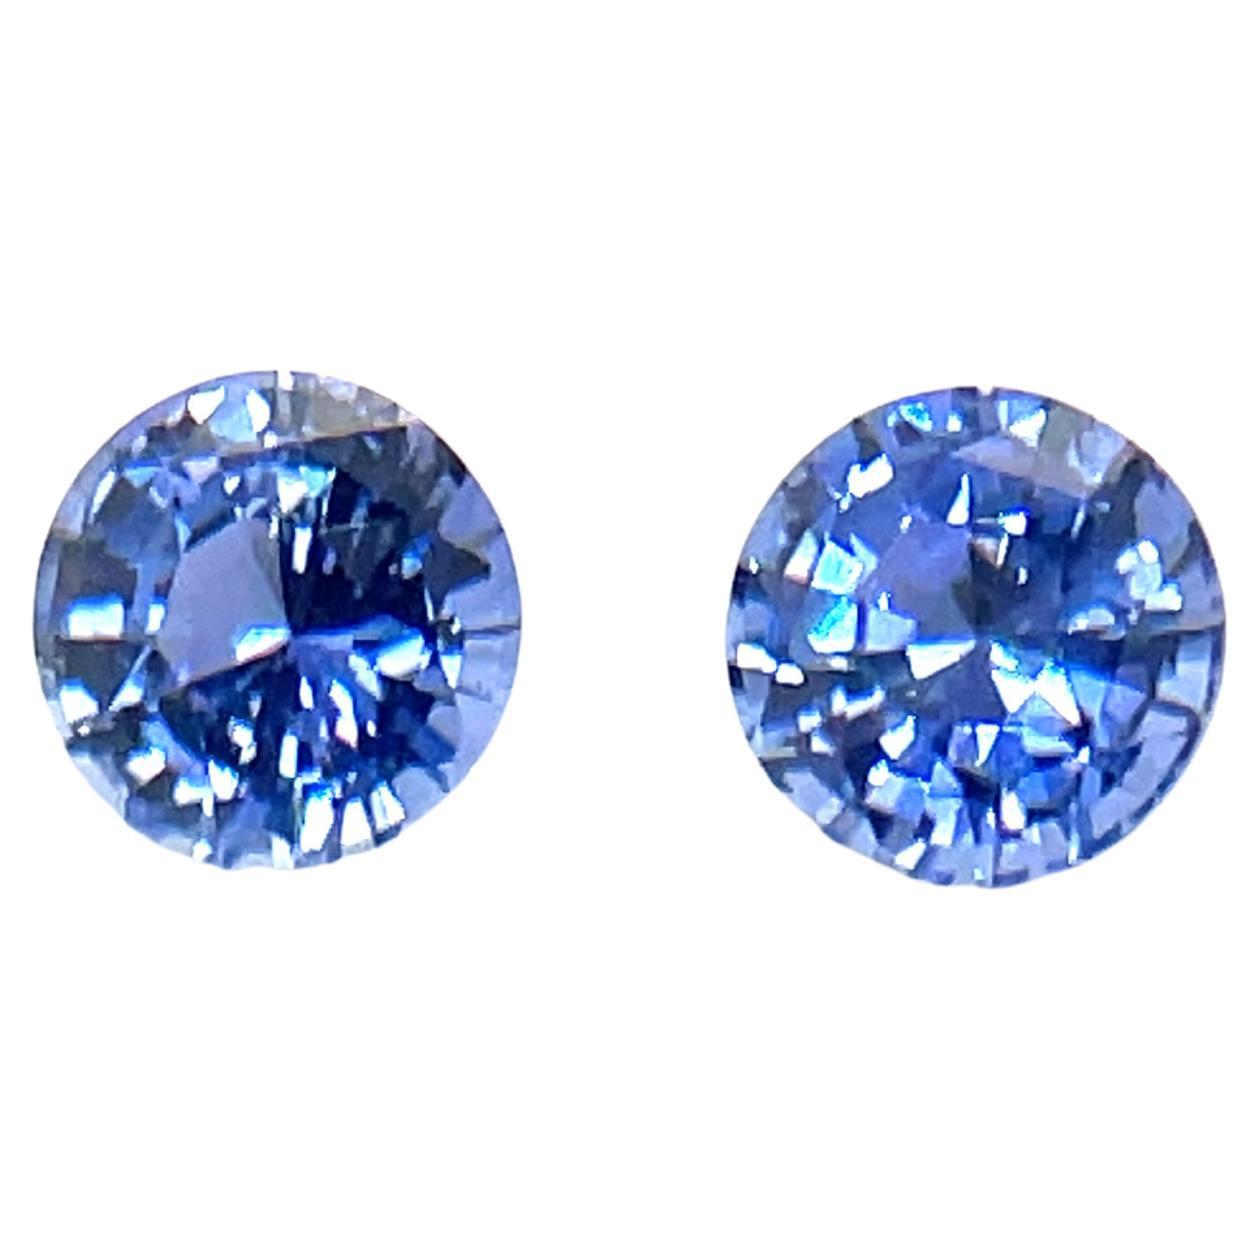 2 saphirs bleus naturels ronds taillés en diamants Cts 1,21